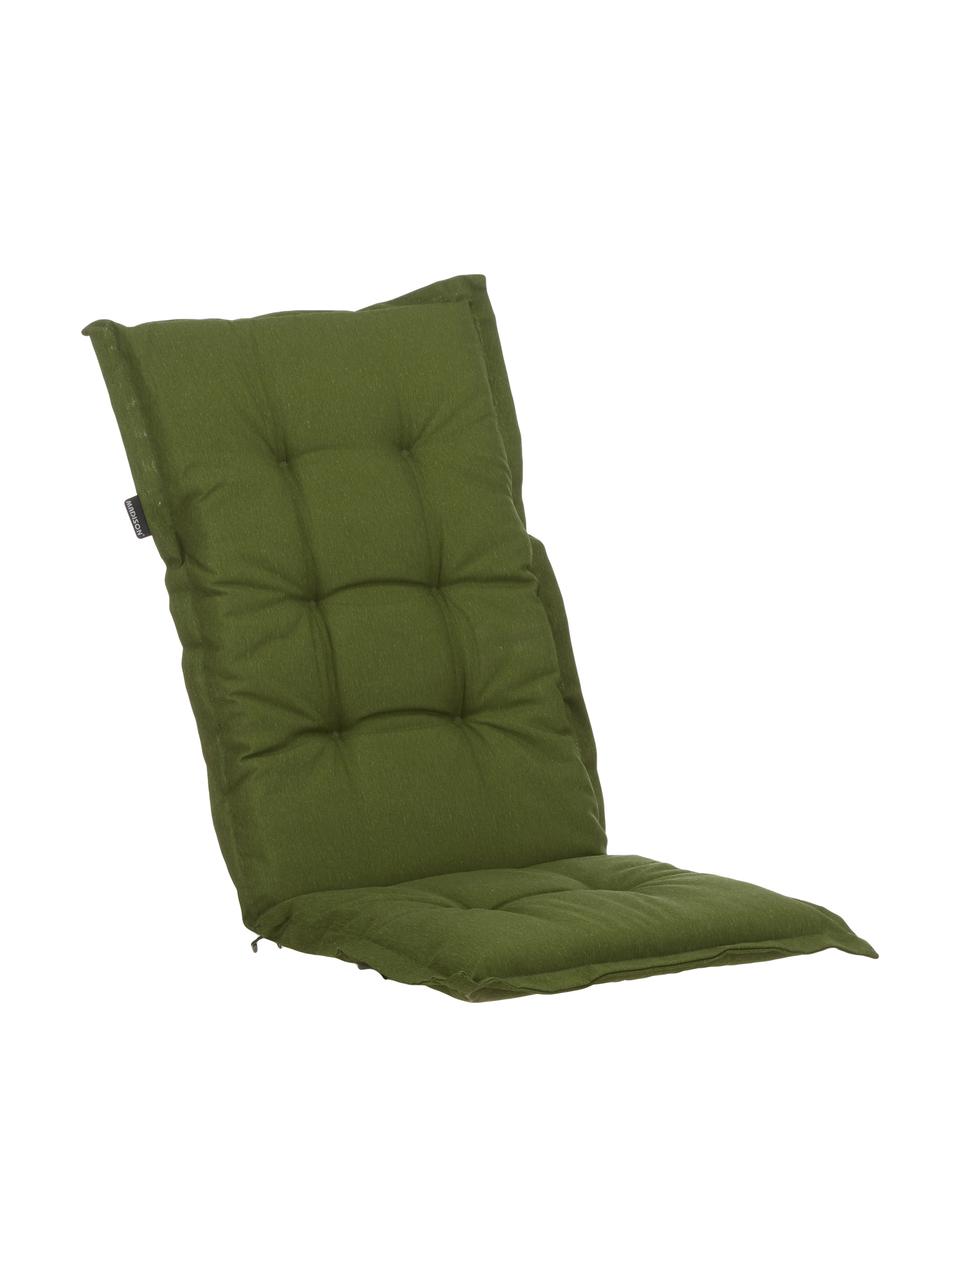 Cuscino sedia con schienale alto Panama, 50% cotone, 45% poliestere,
5% altre fibre, Verde, Larg. 50 x Lung. 123 cm